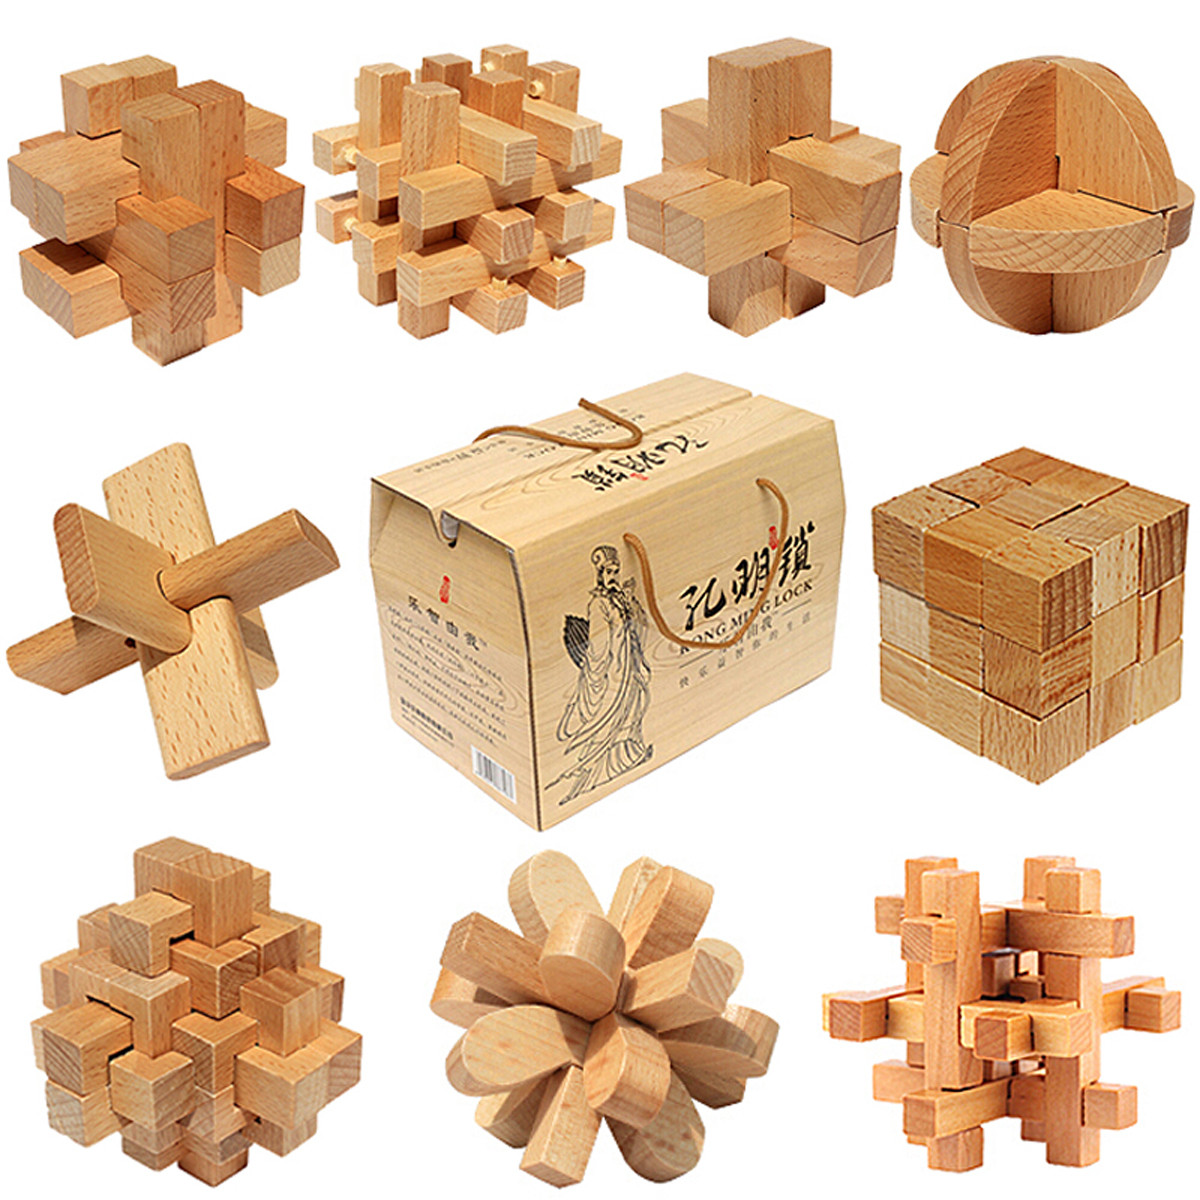 孔明锁儿童学生积木拼装玩具古典益智减压鲁班锁25件套